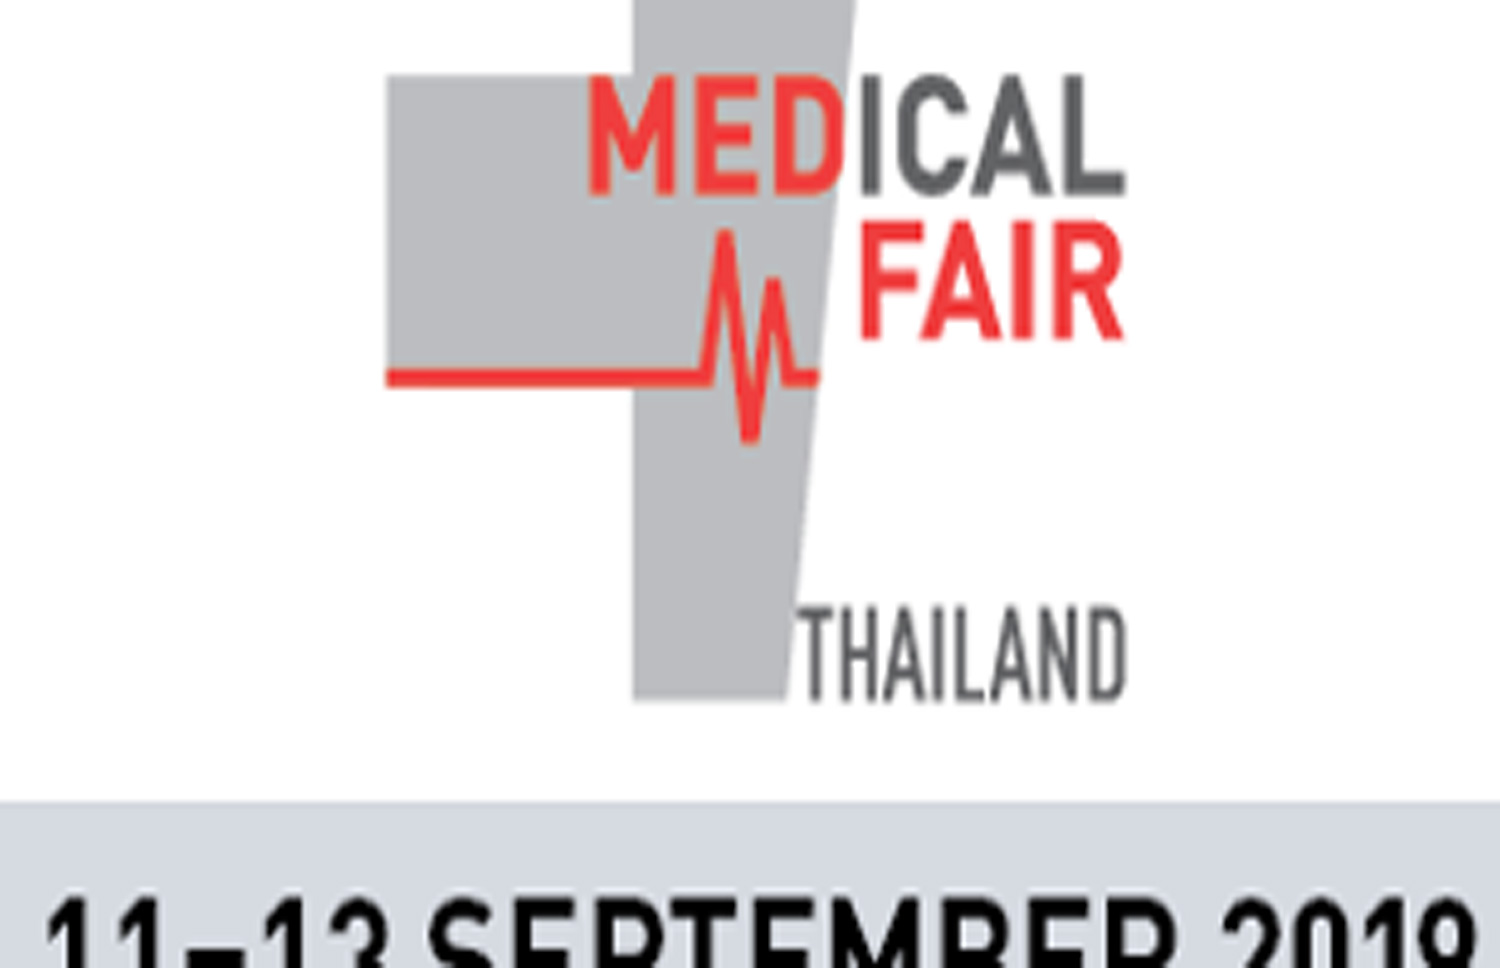 Medical Fair Thailand 2019